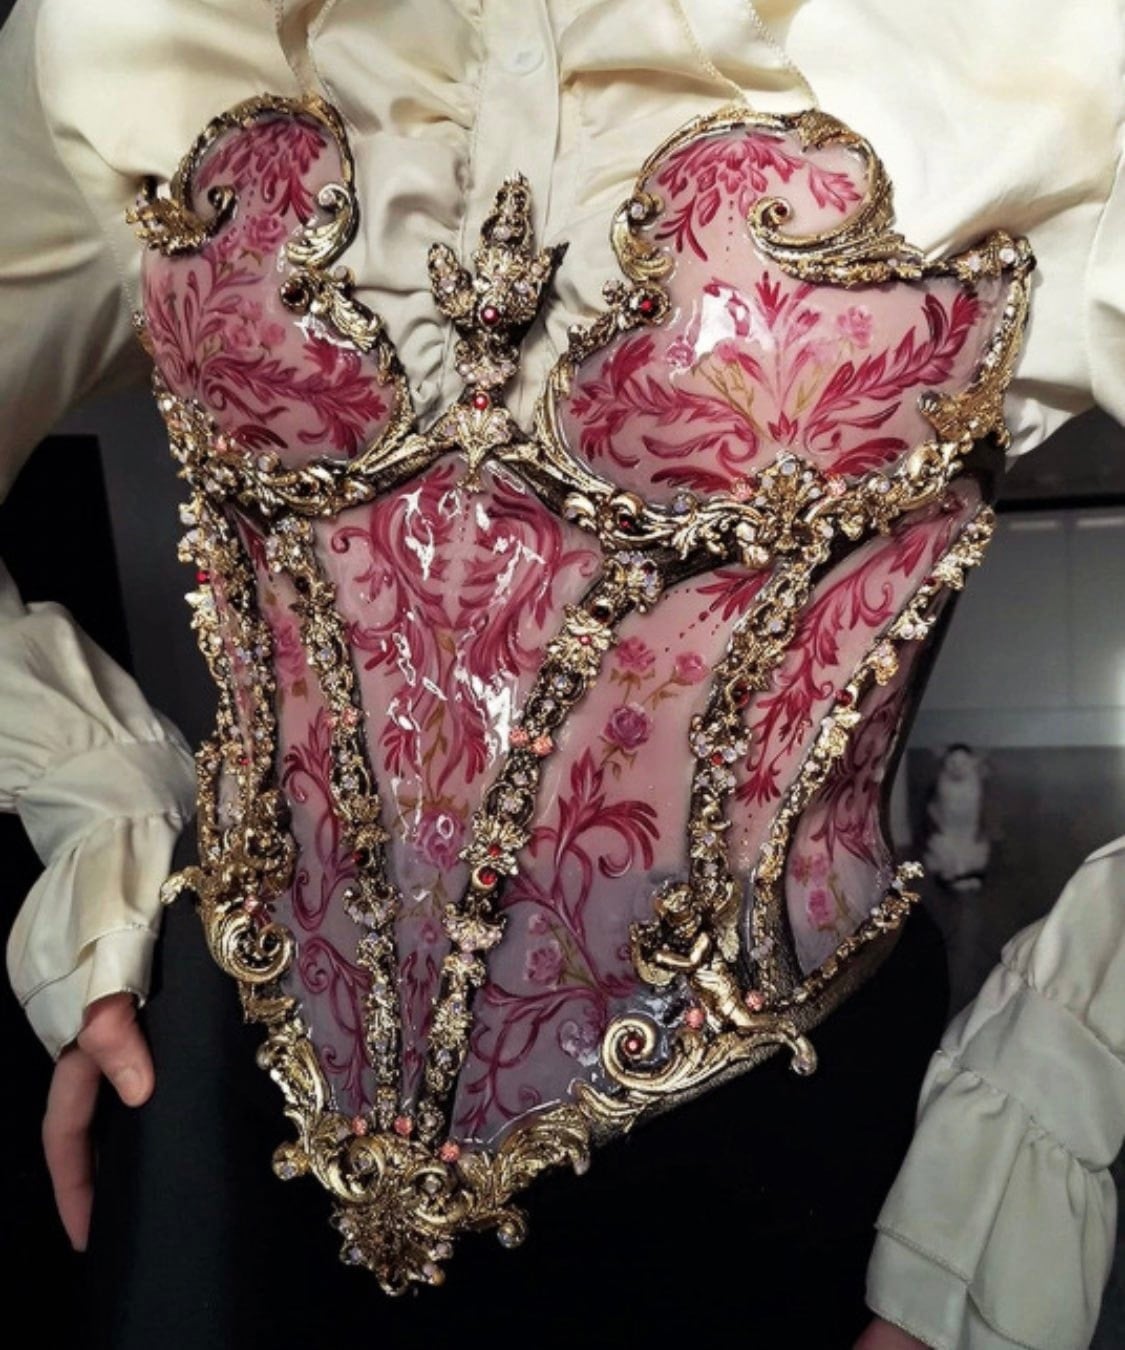 NTK Joyce Spakman đã tạo ra những chiếc corset bằng gốm đầy tinh xảo và không thua gì những thiết kế được làm bằng vải. Thậm chí chúng còn có phần lung linh hơn vì áp dụng những kỹ thuật của việc làm gốm